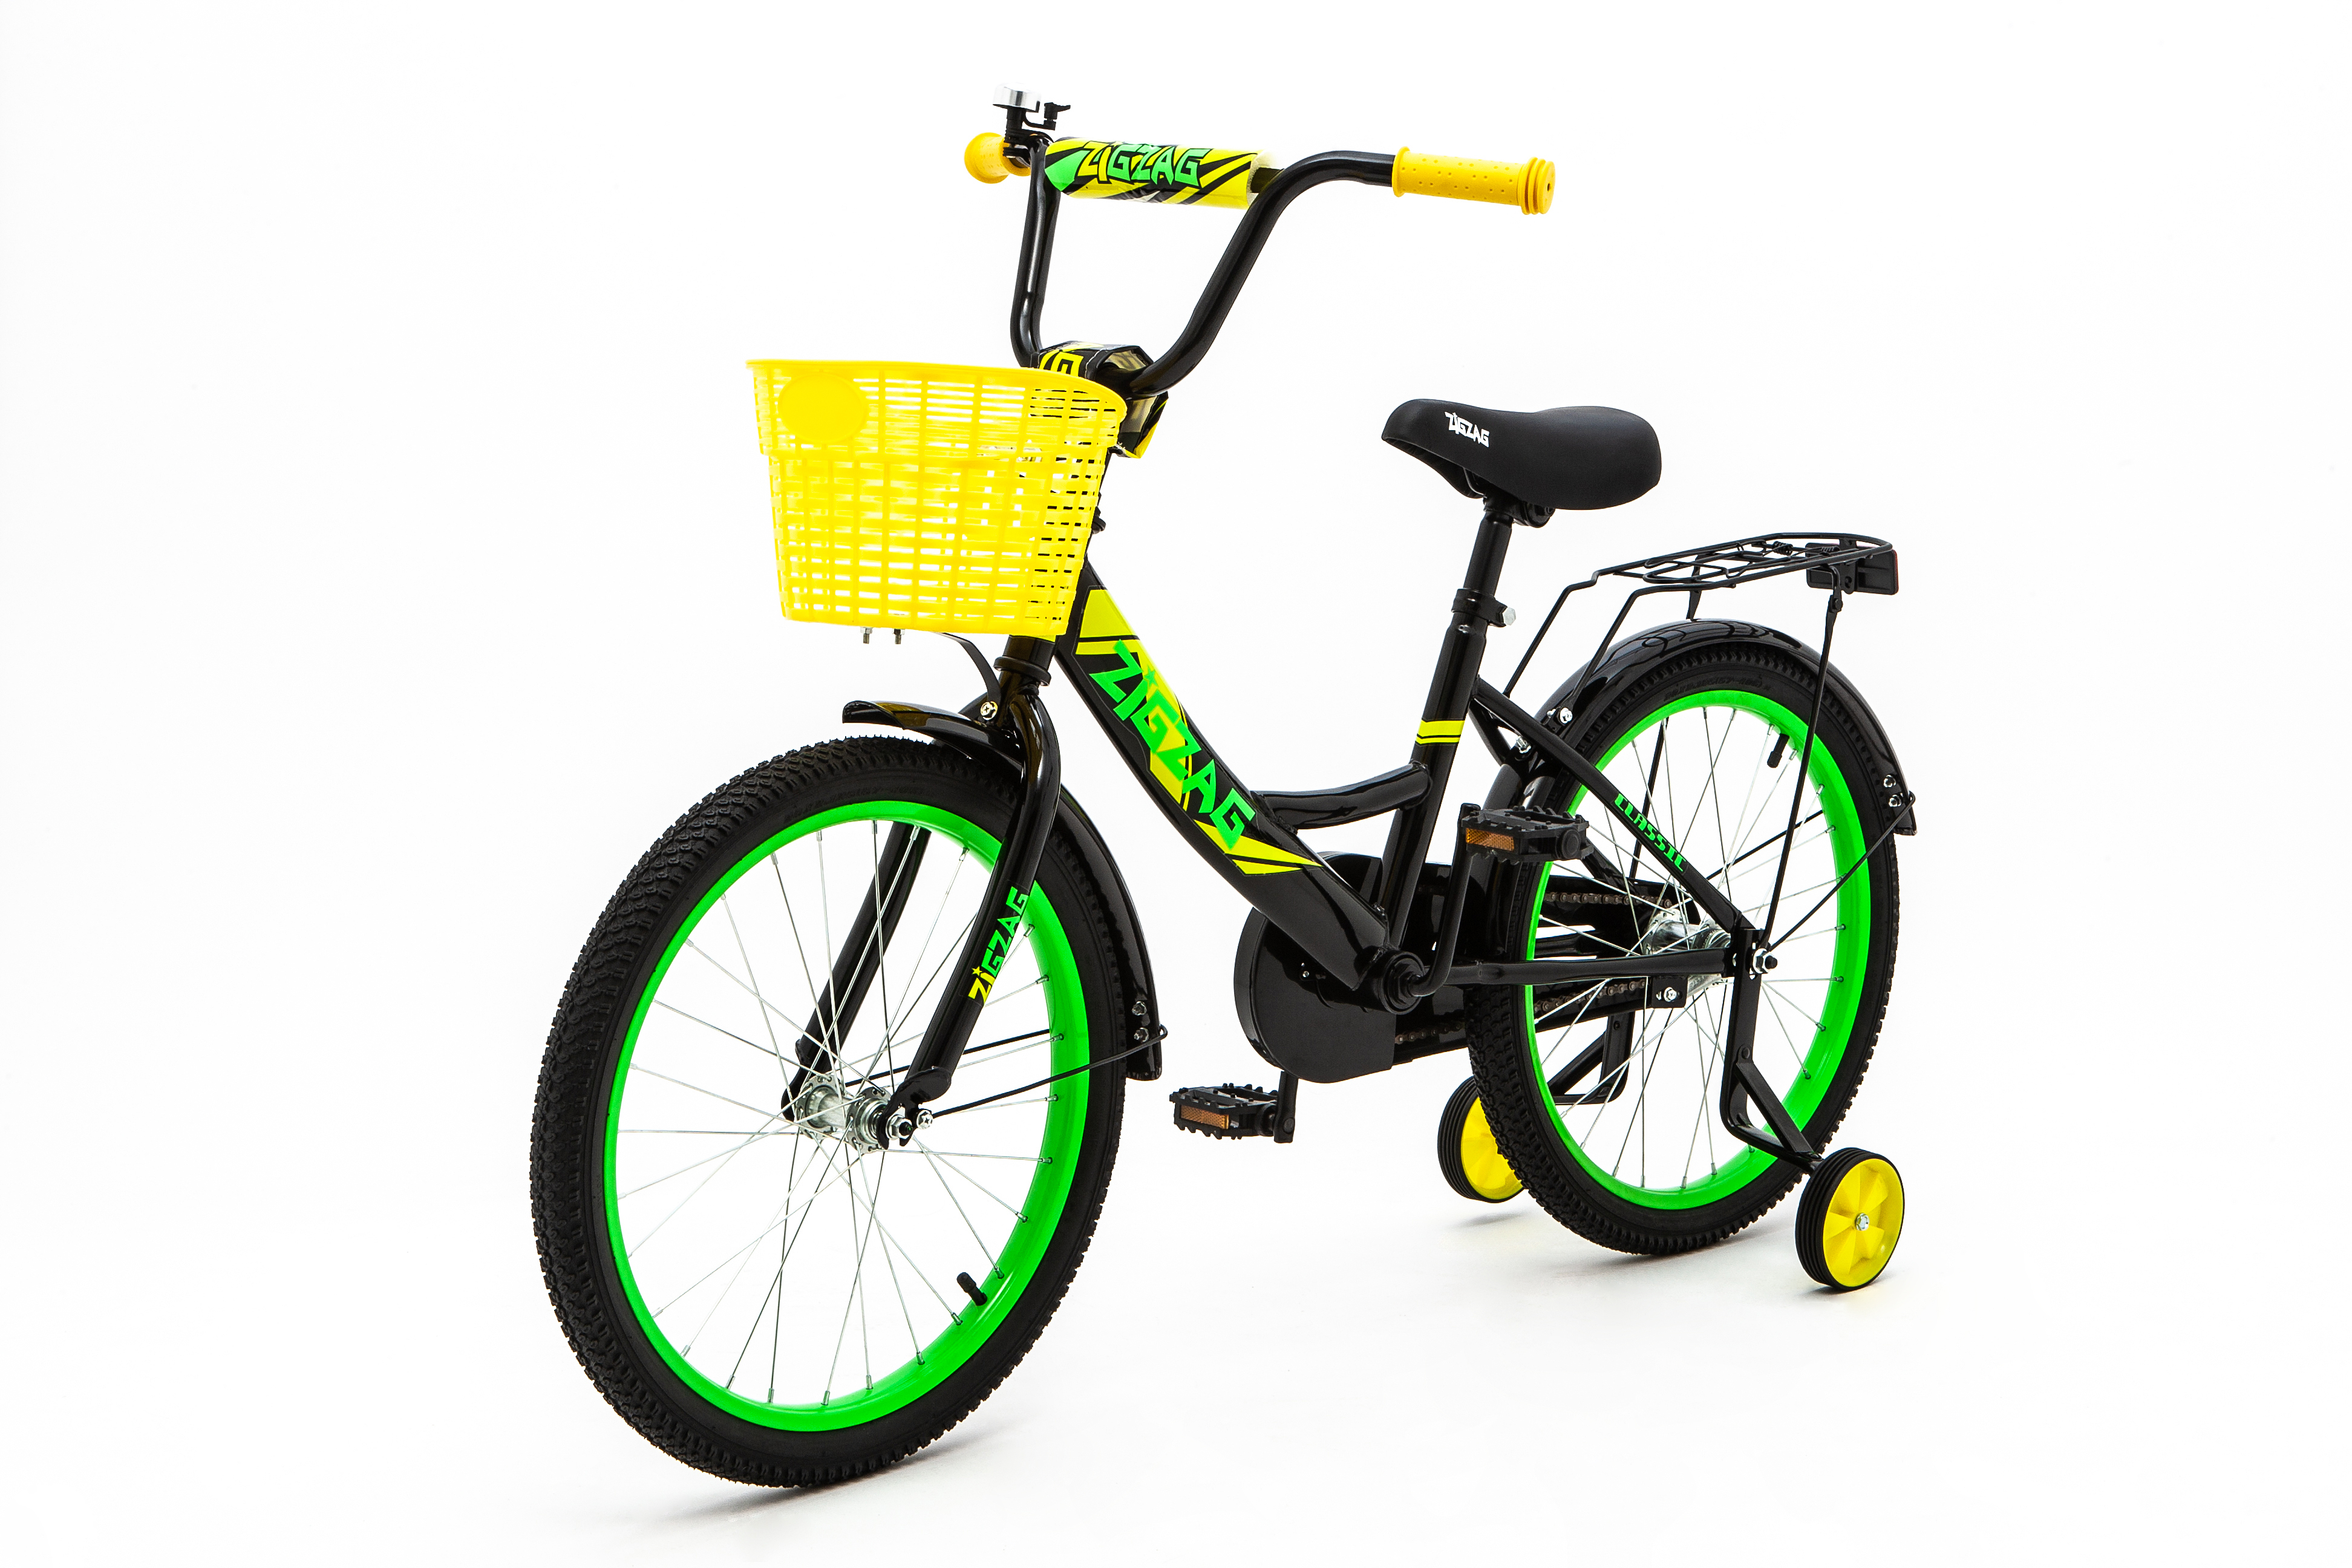 Велосипед ZigZag CLASSIC черный желтый зеленый 20 дюймов - фото 3